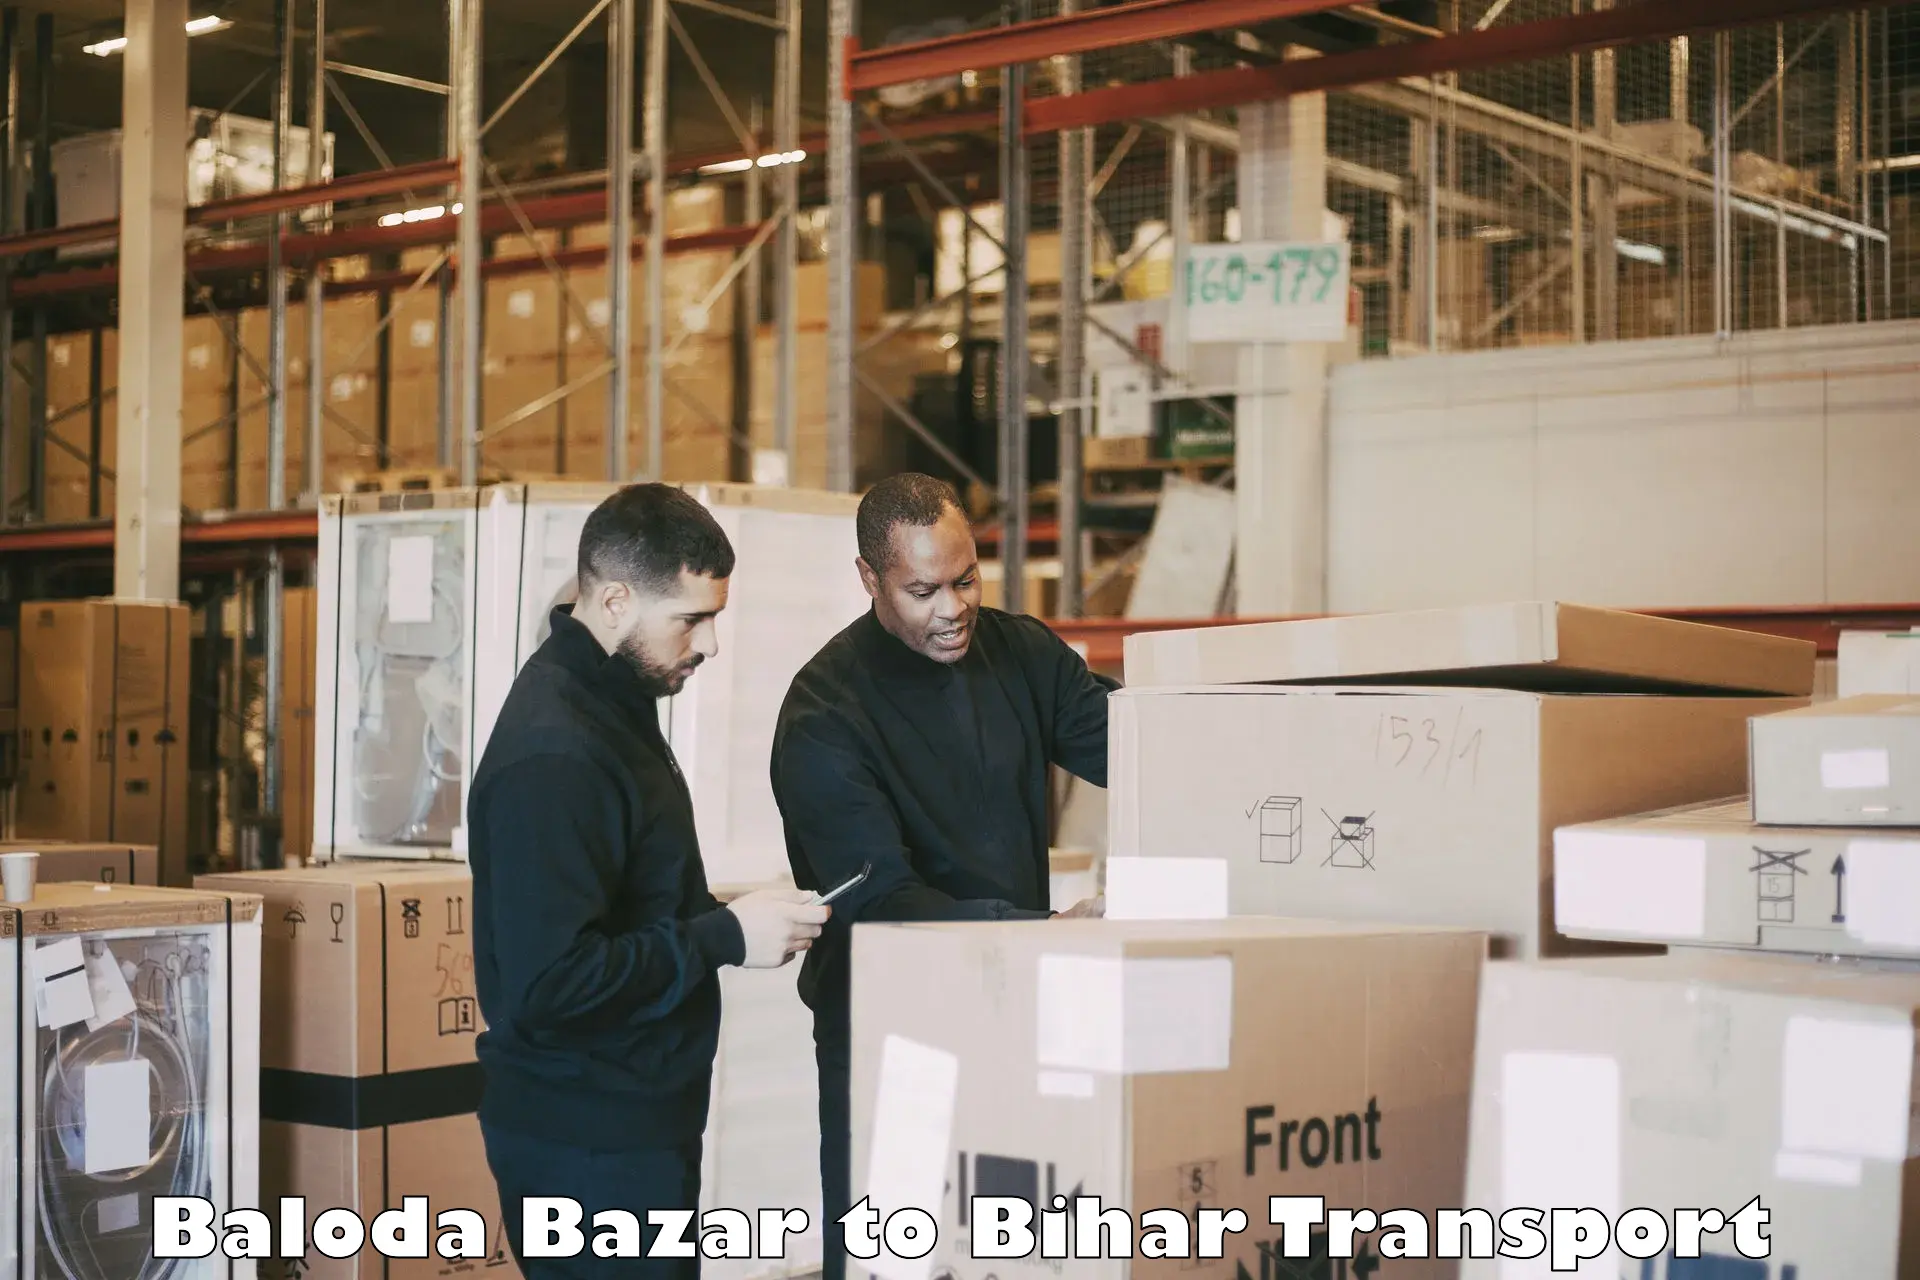 Shipping services Baloda Bazar to Khagaria